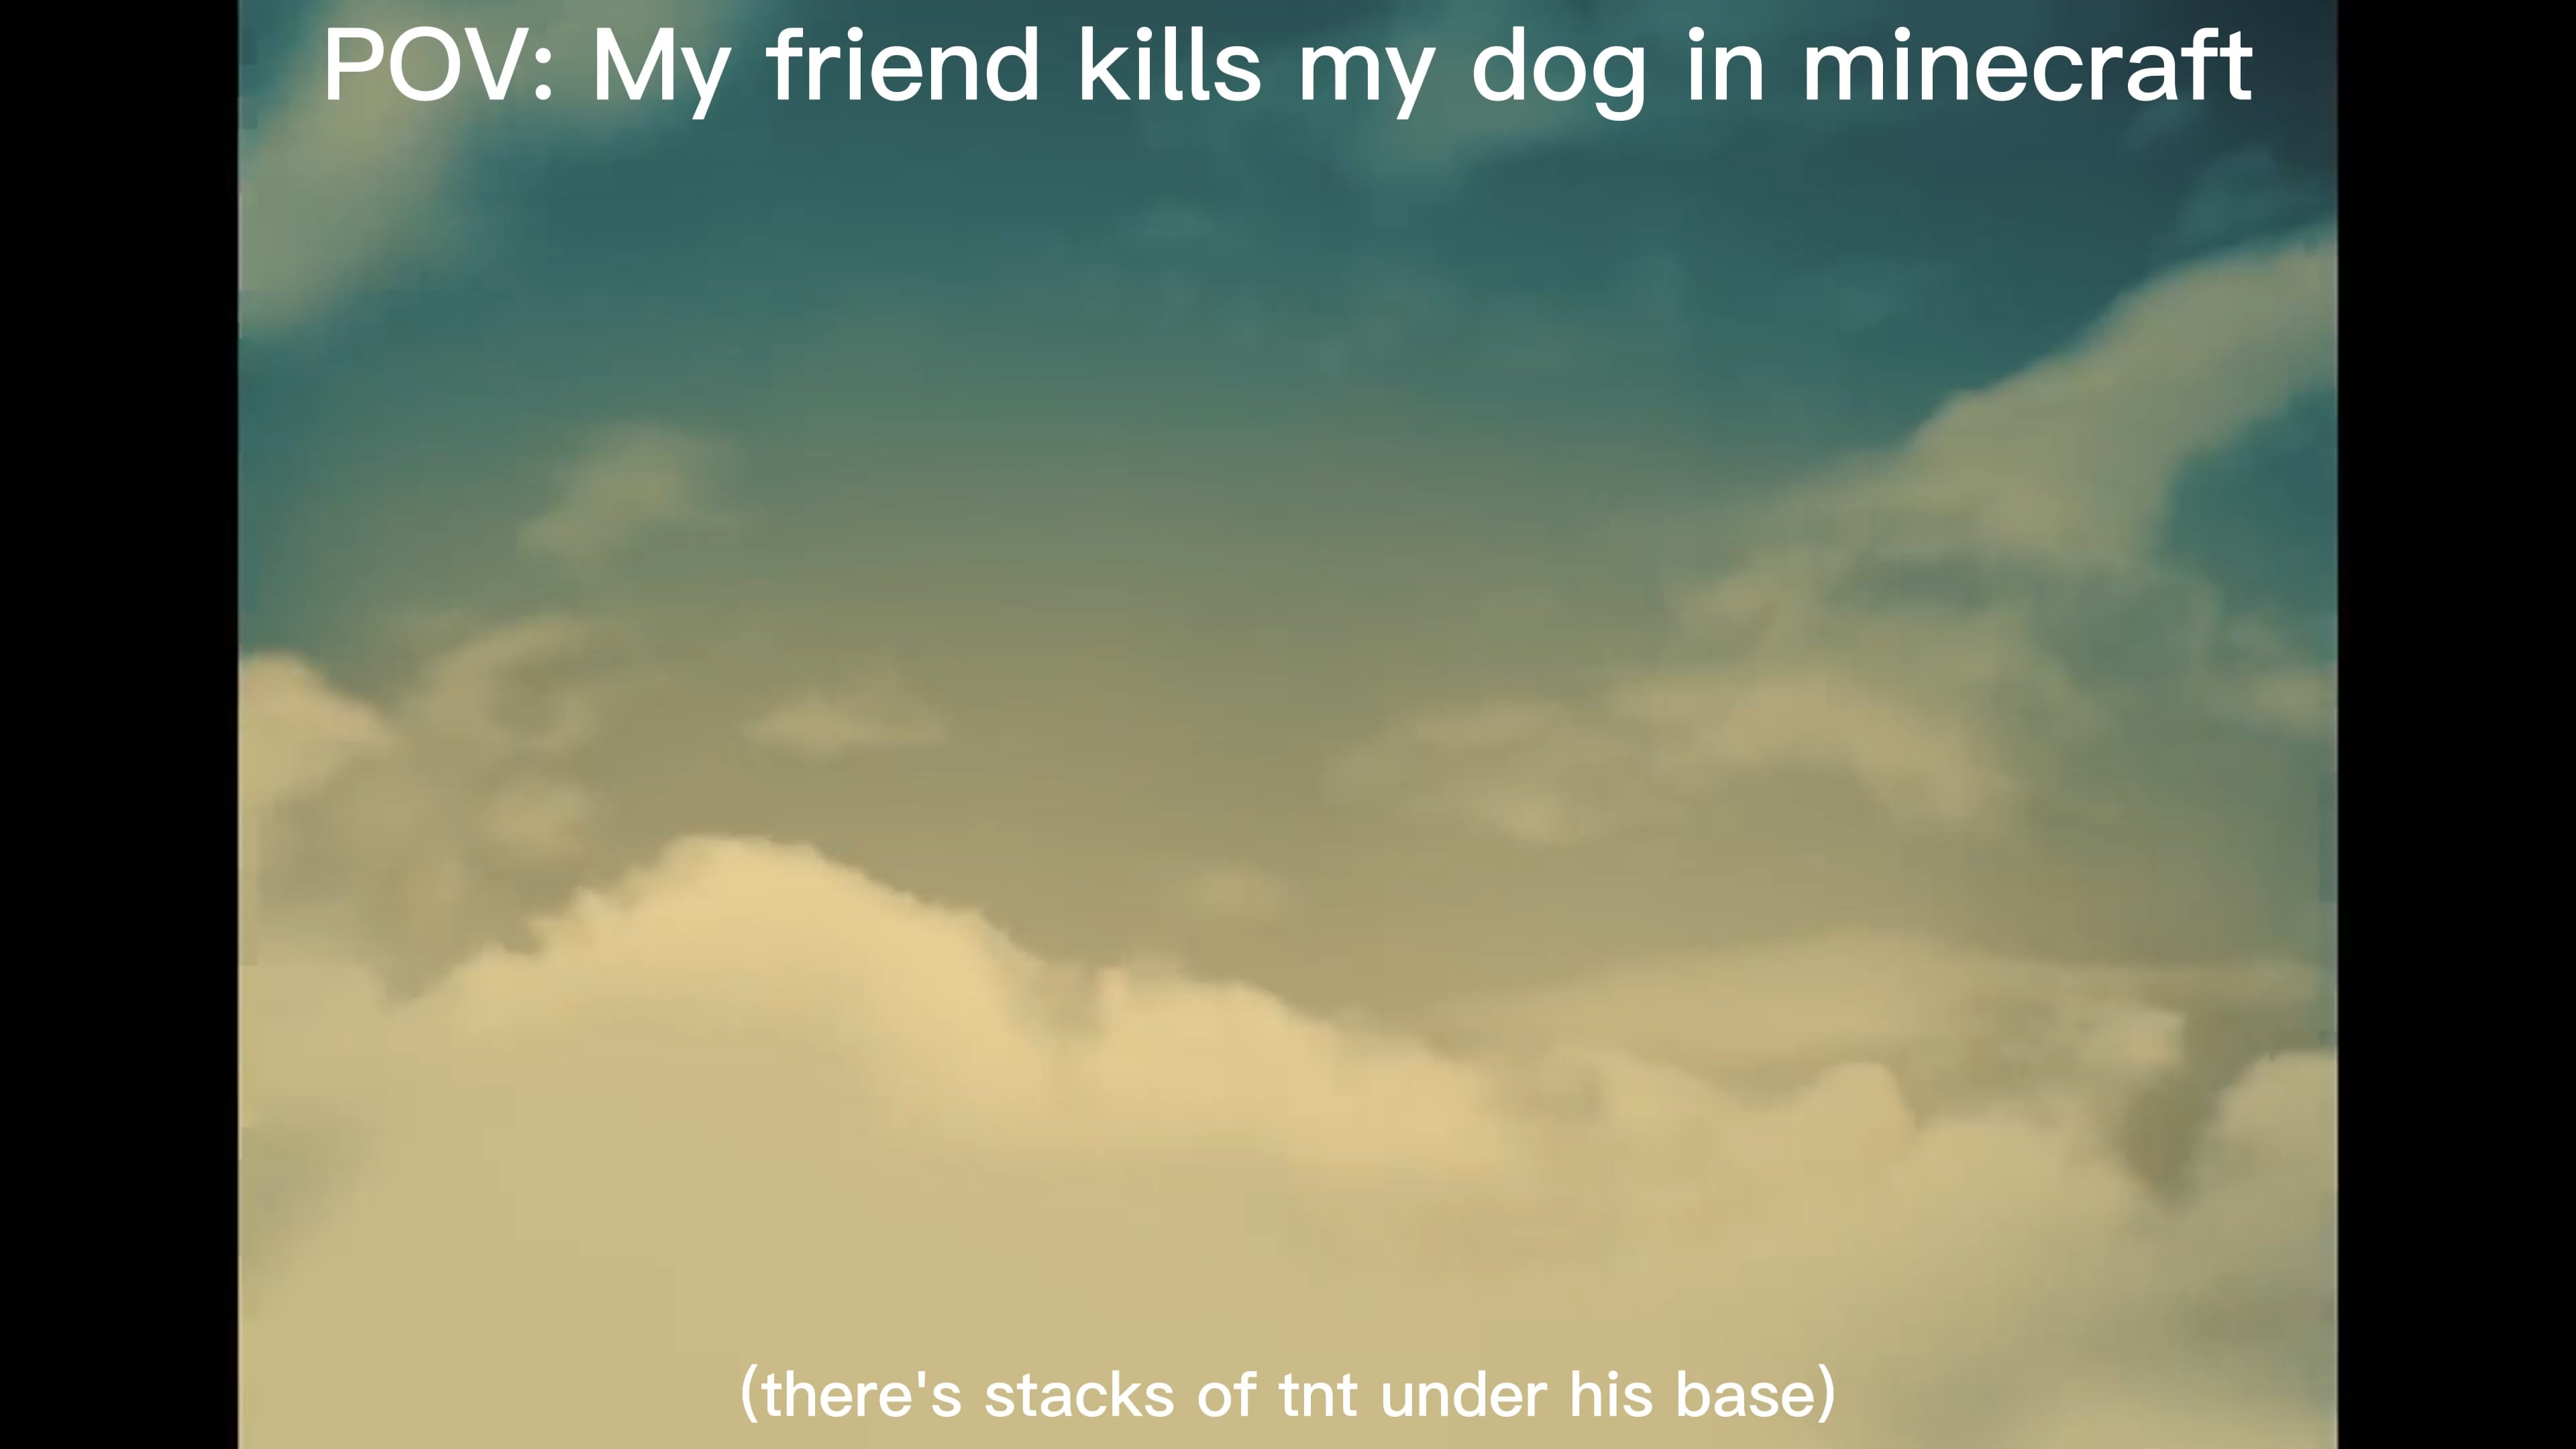 Minecraft Memes - "Friend Murders My Minecraft Pooch"